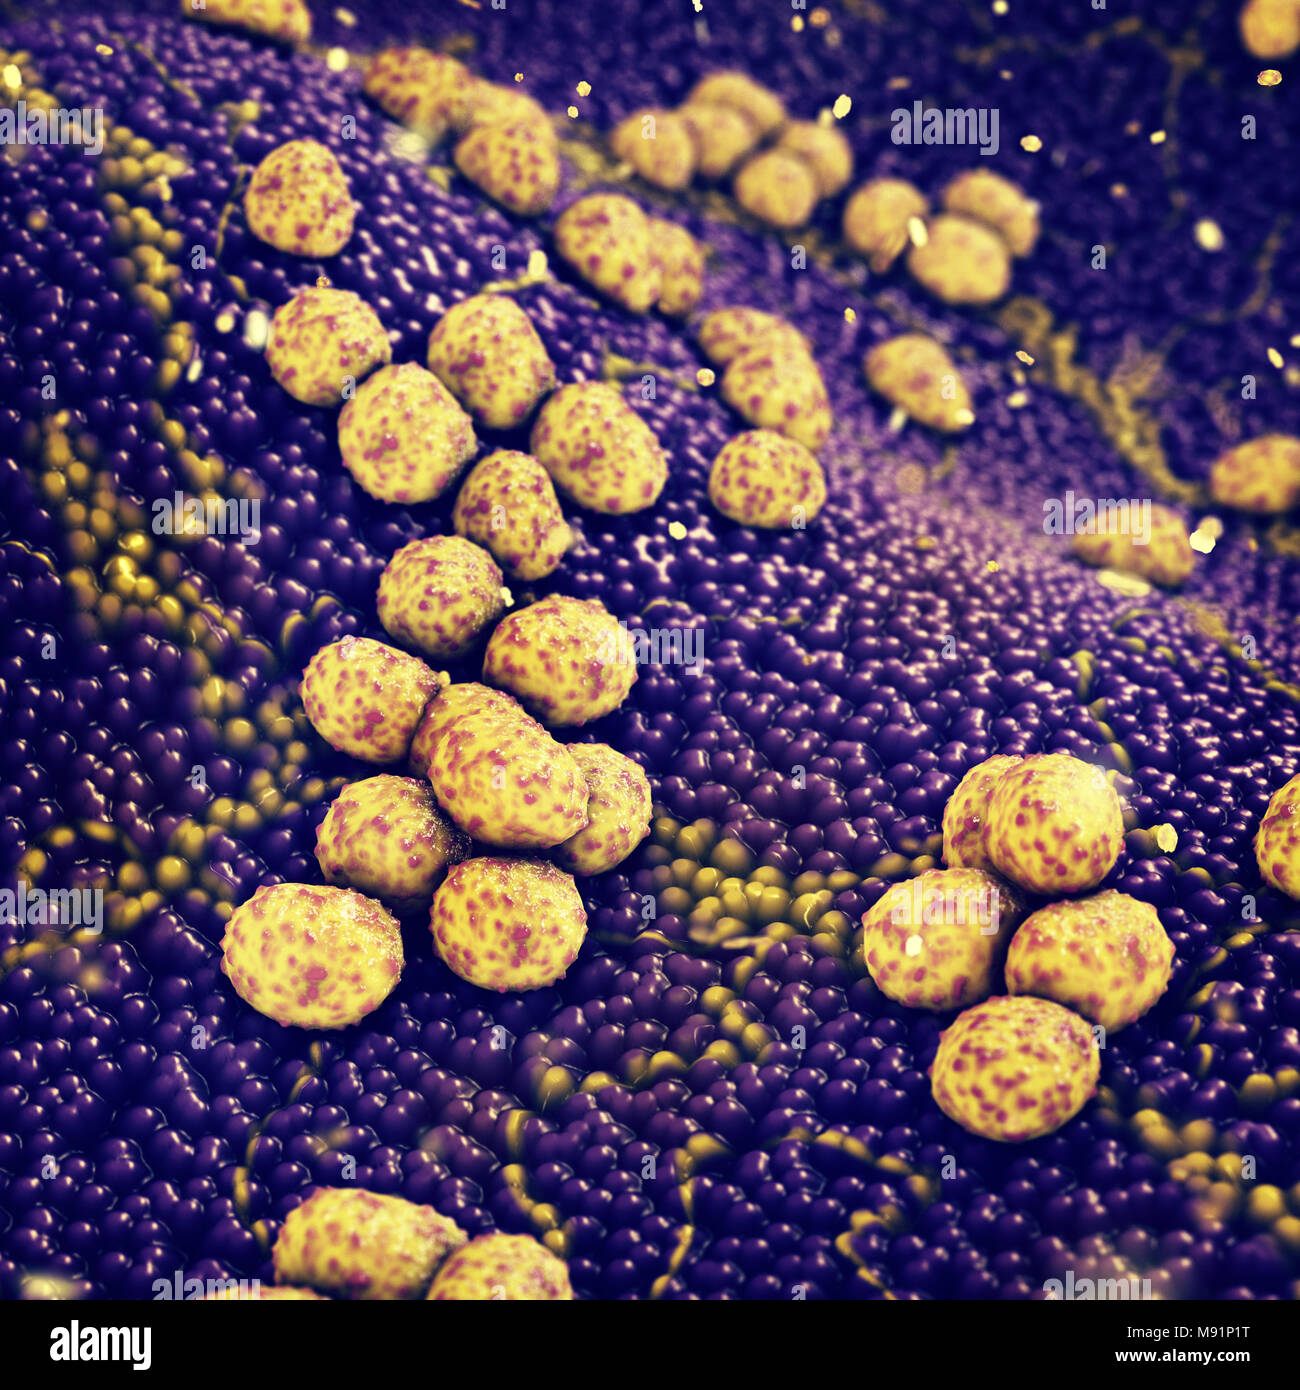 Colonie de bactéries Staphylococcus aureus provoquant une infection de la peau, maladies infectieuses résistantes aux antibiotiques Banque D'Images